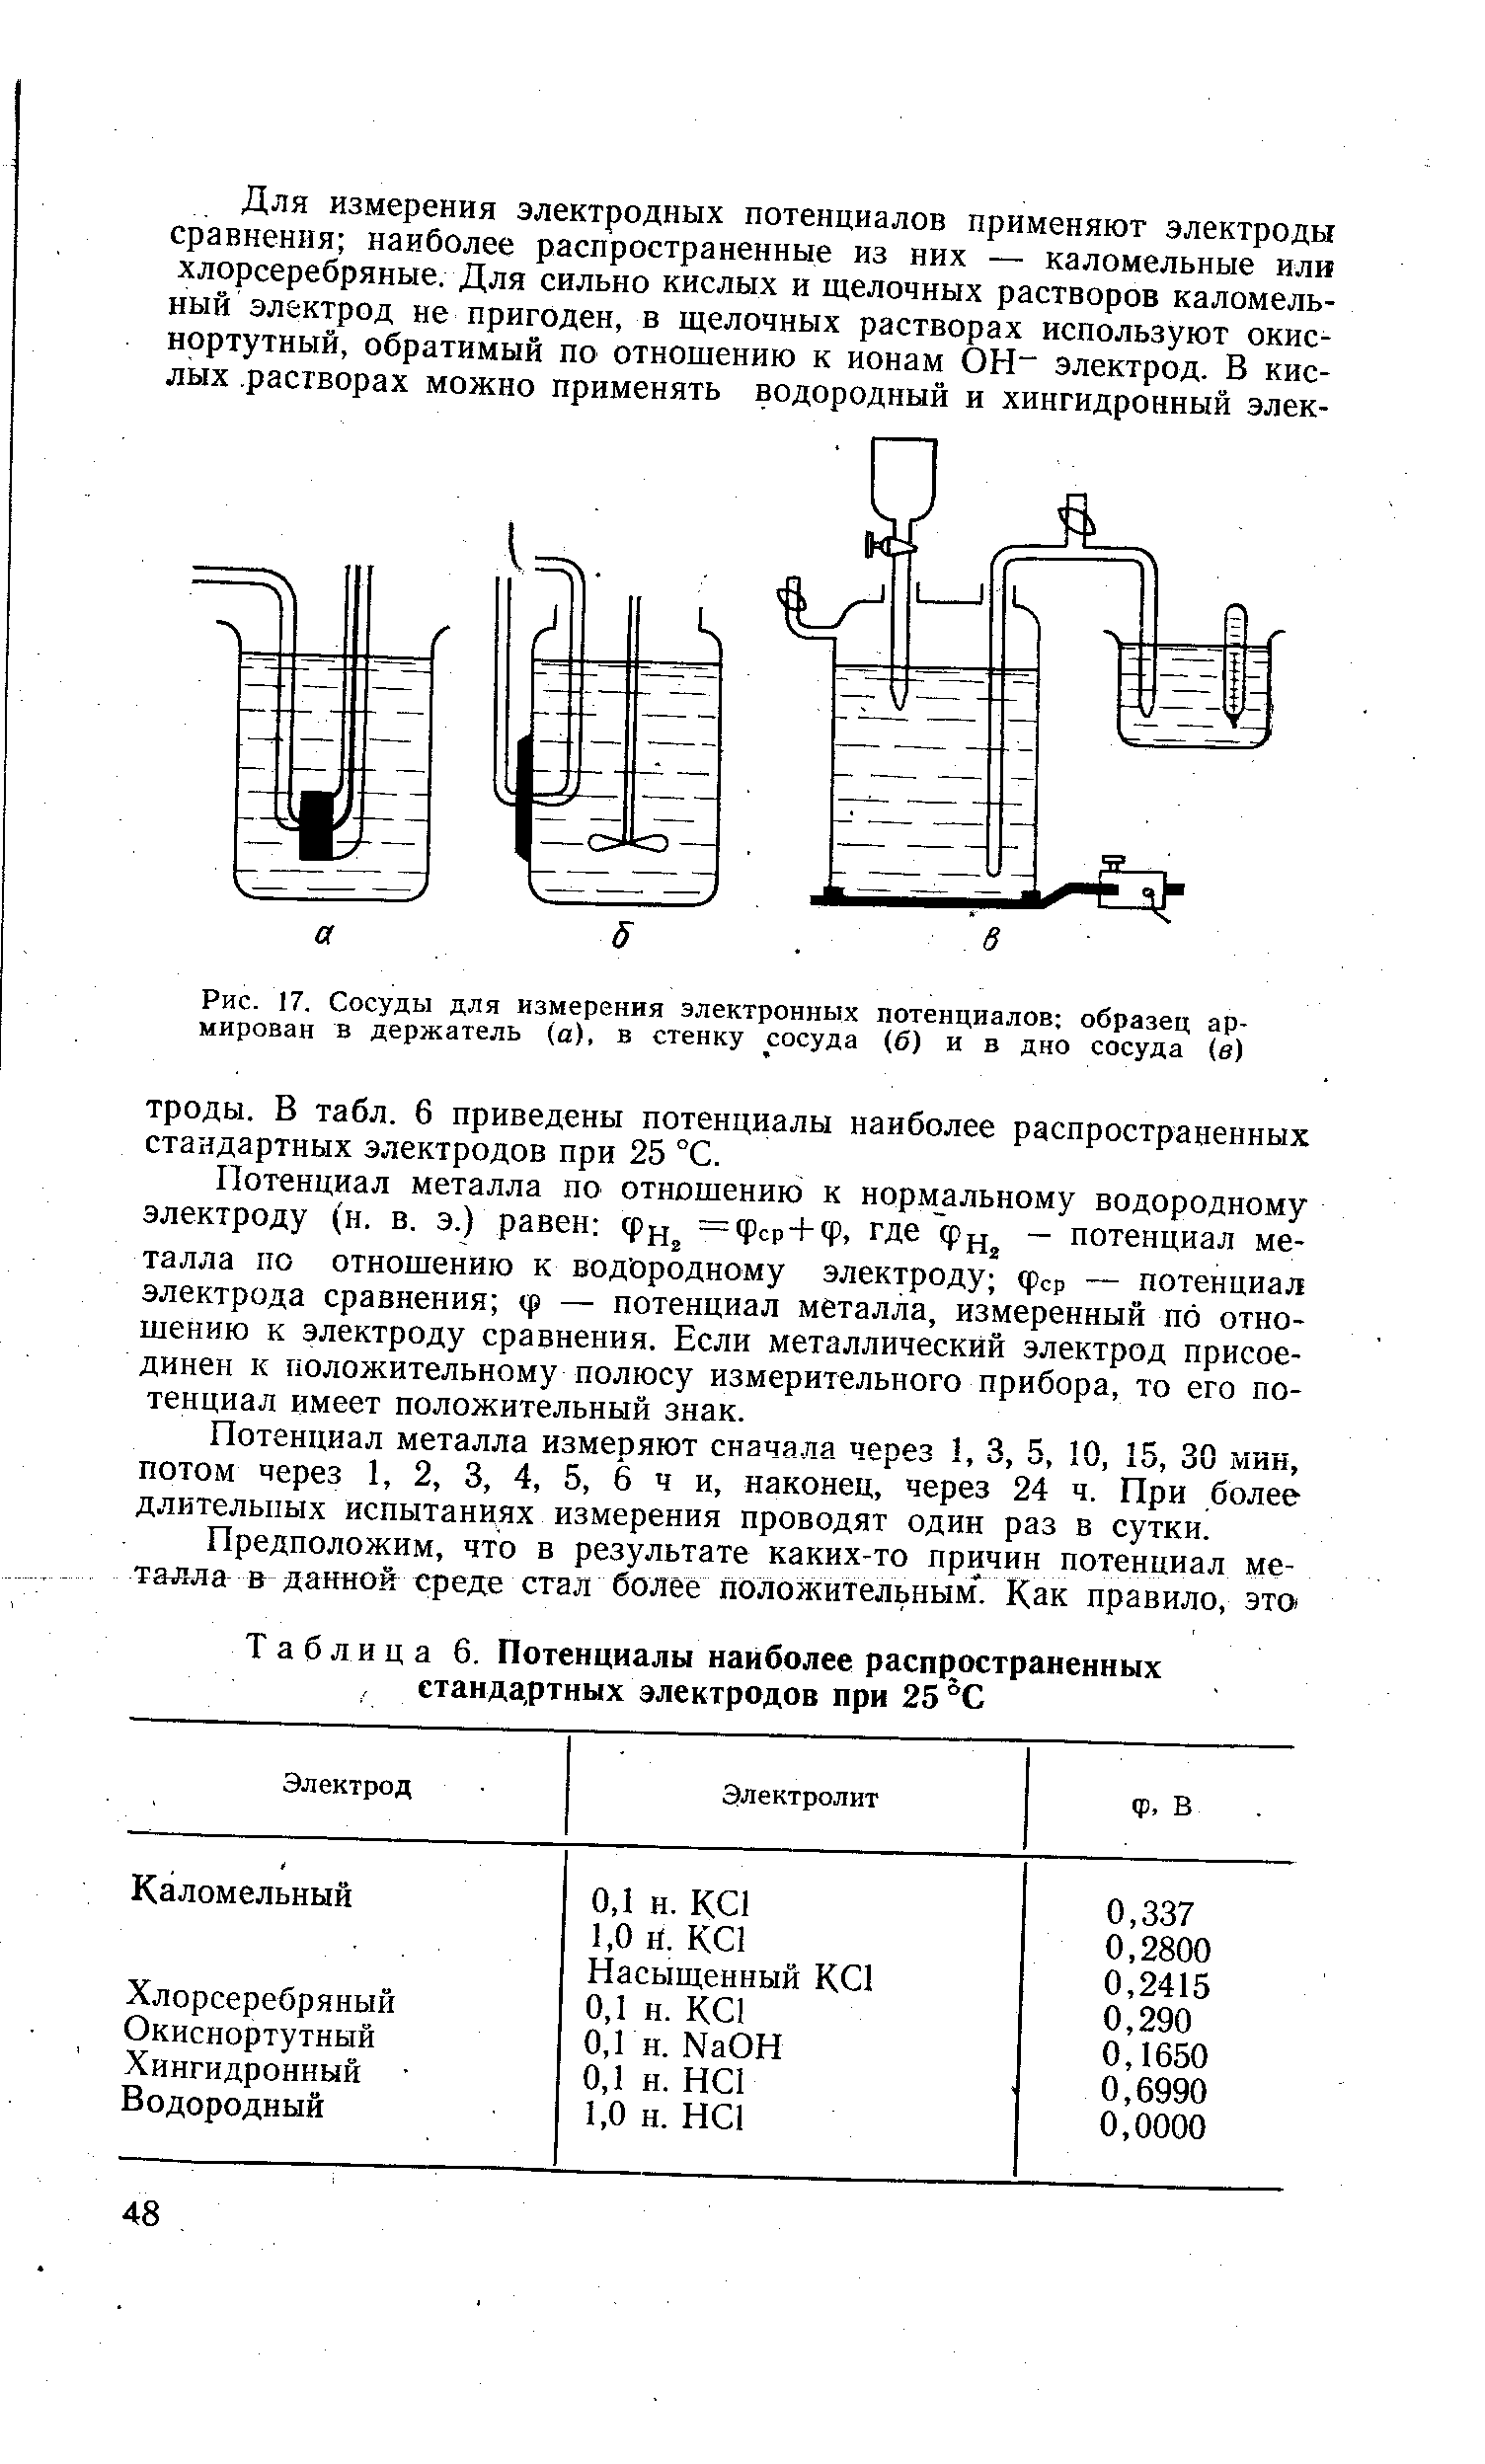 Рис. 17. Сосуды для измерения электронных потенциалов образец армирован в держатель (а), в стенку сосуда (б) и в дно сосуда (в)
